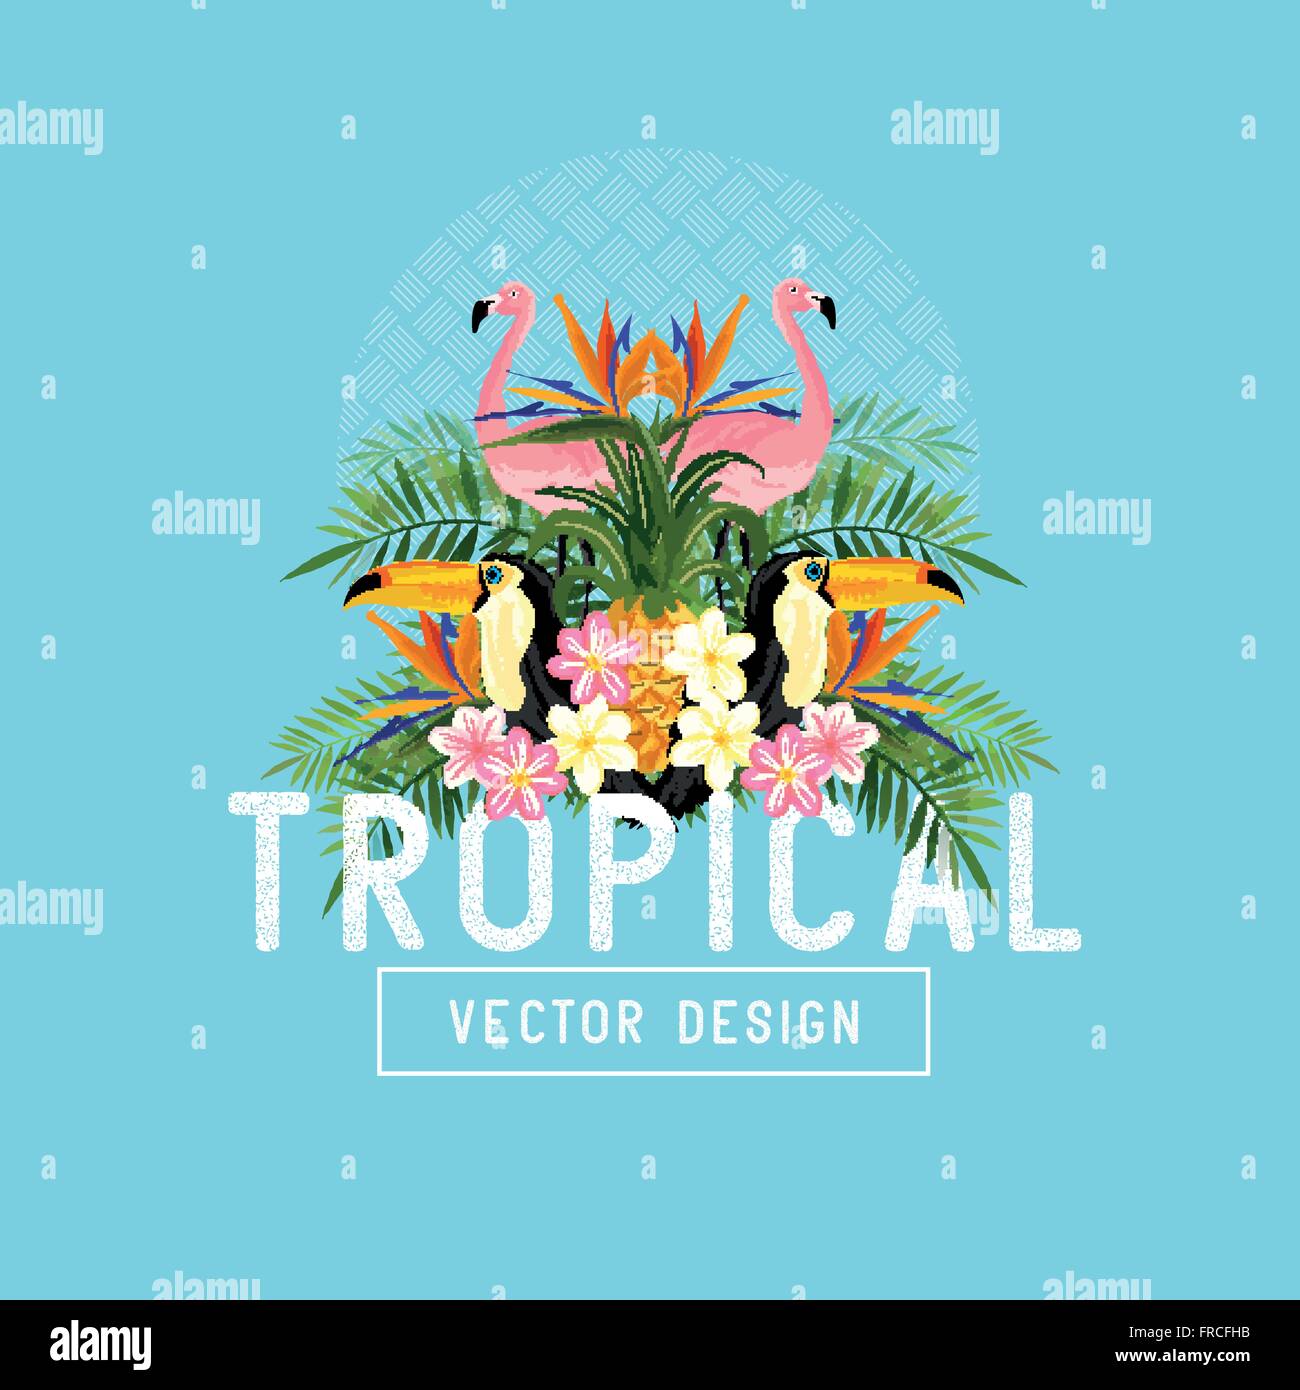 Tropischer Sommer Vektor. Tropic Elemente, darunter Flamingos, Palmen, Tukane, Paradiesvogel Blumen und Ananas Stock Vektor